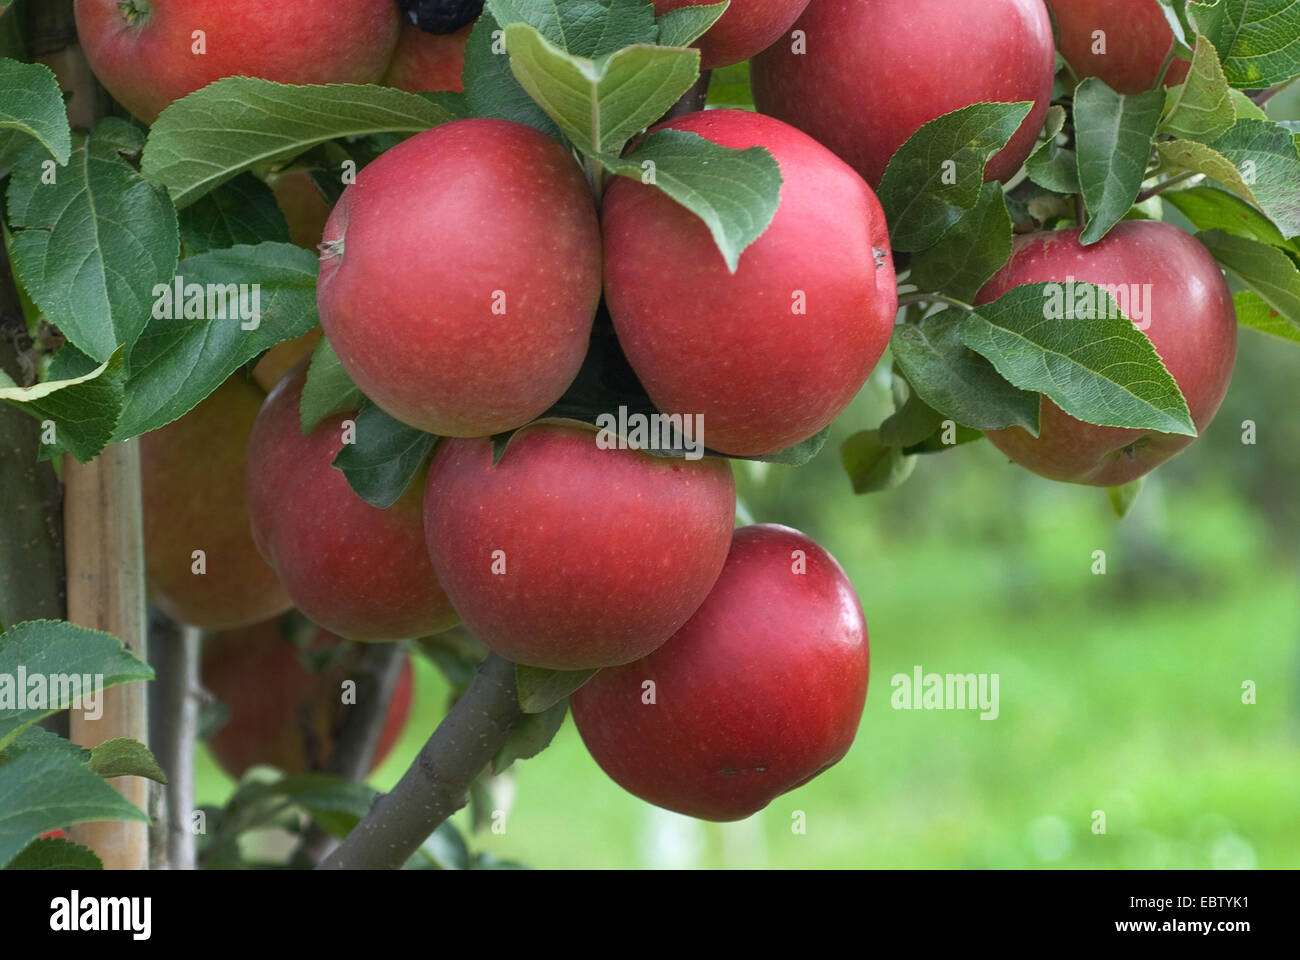 Apfelbaum (Malus Domestica 'Delcoros', Malus Domestica Delcoros), Sorte Delcoros, Äpfel auf dem Baum Stockfoto